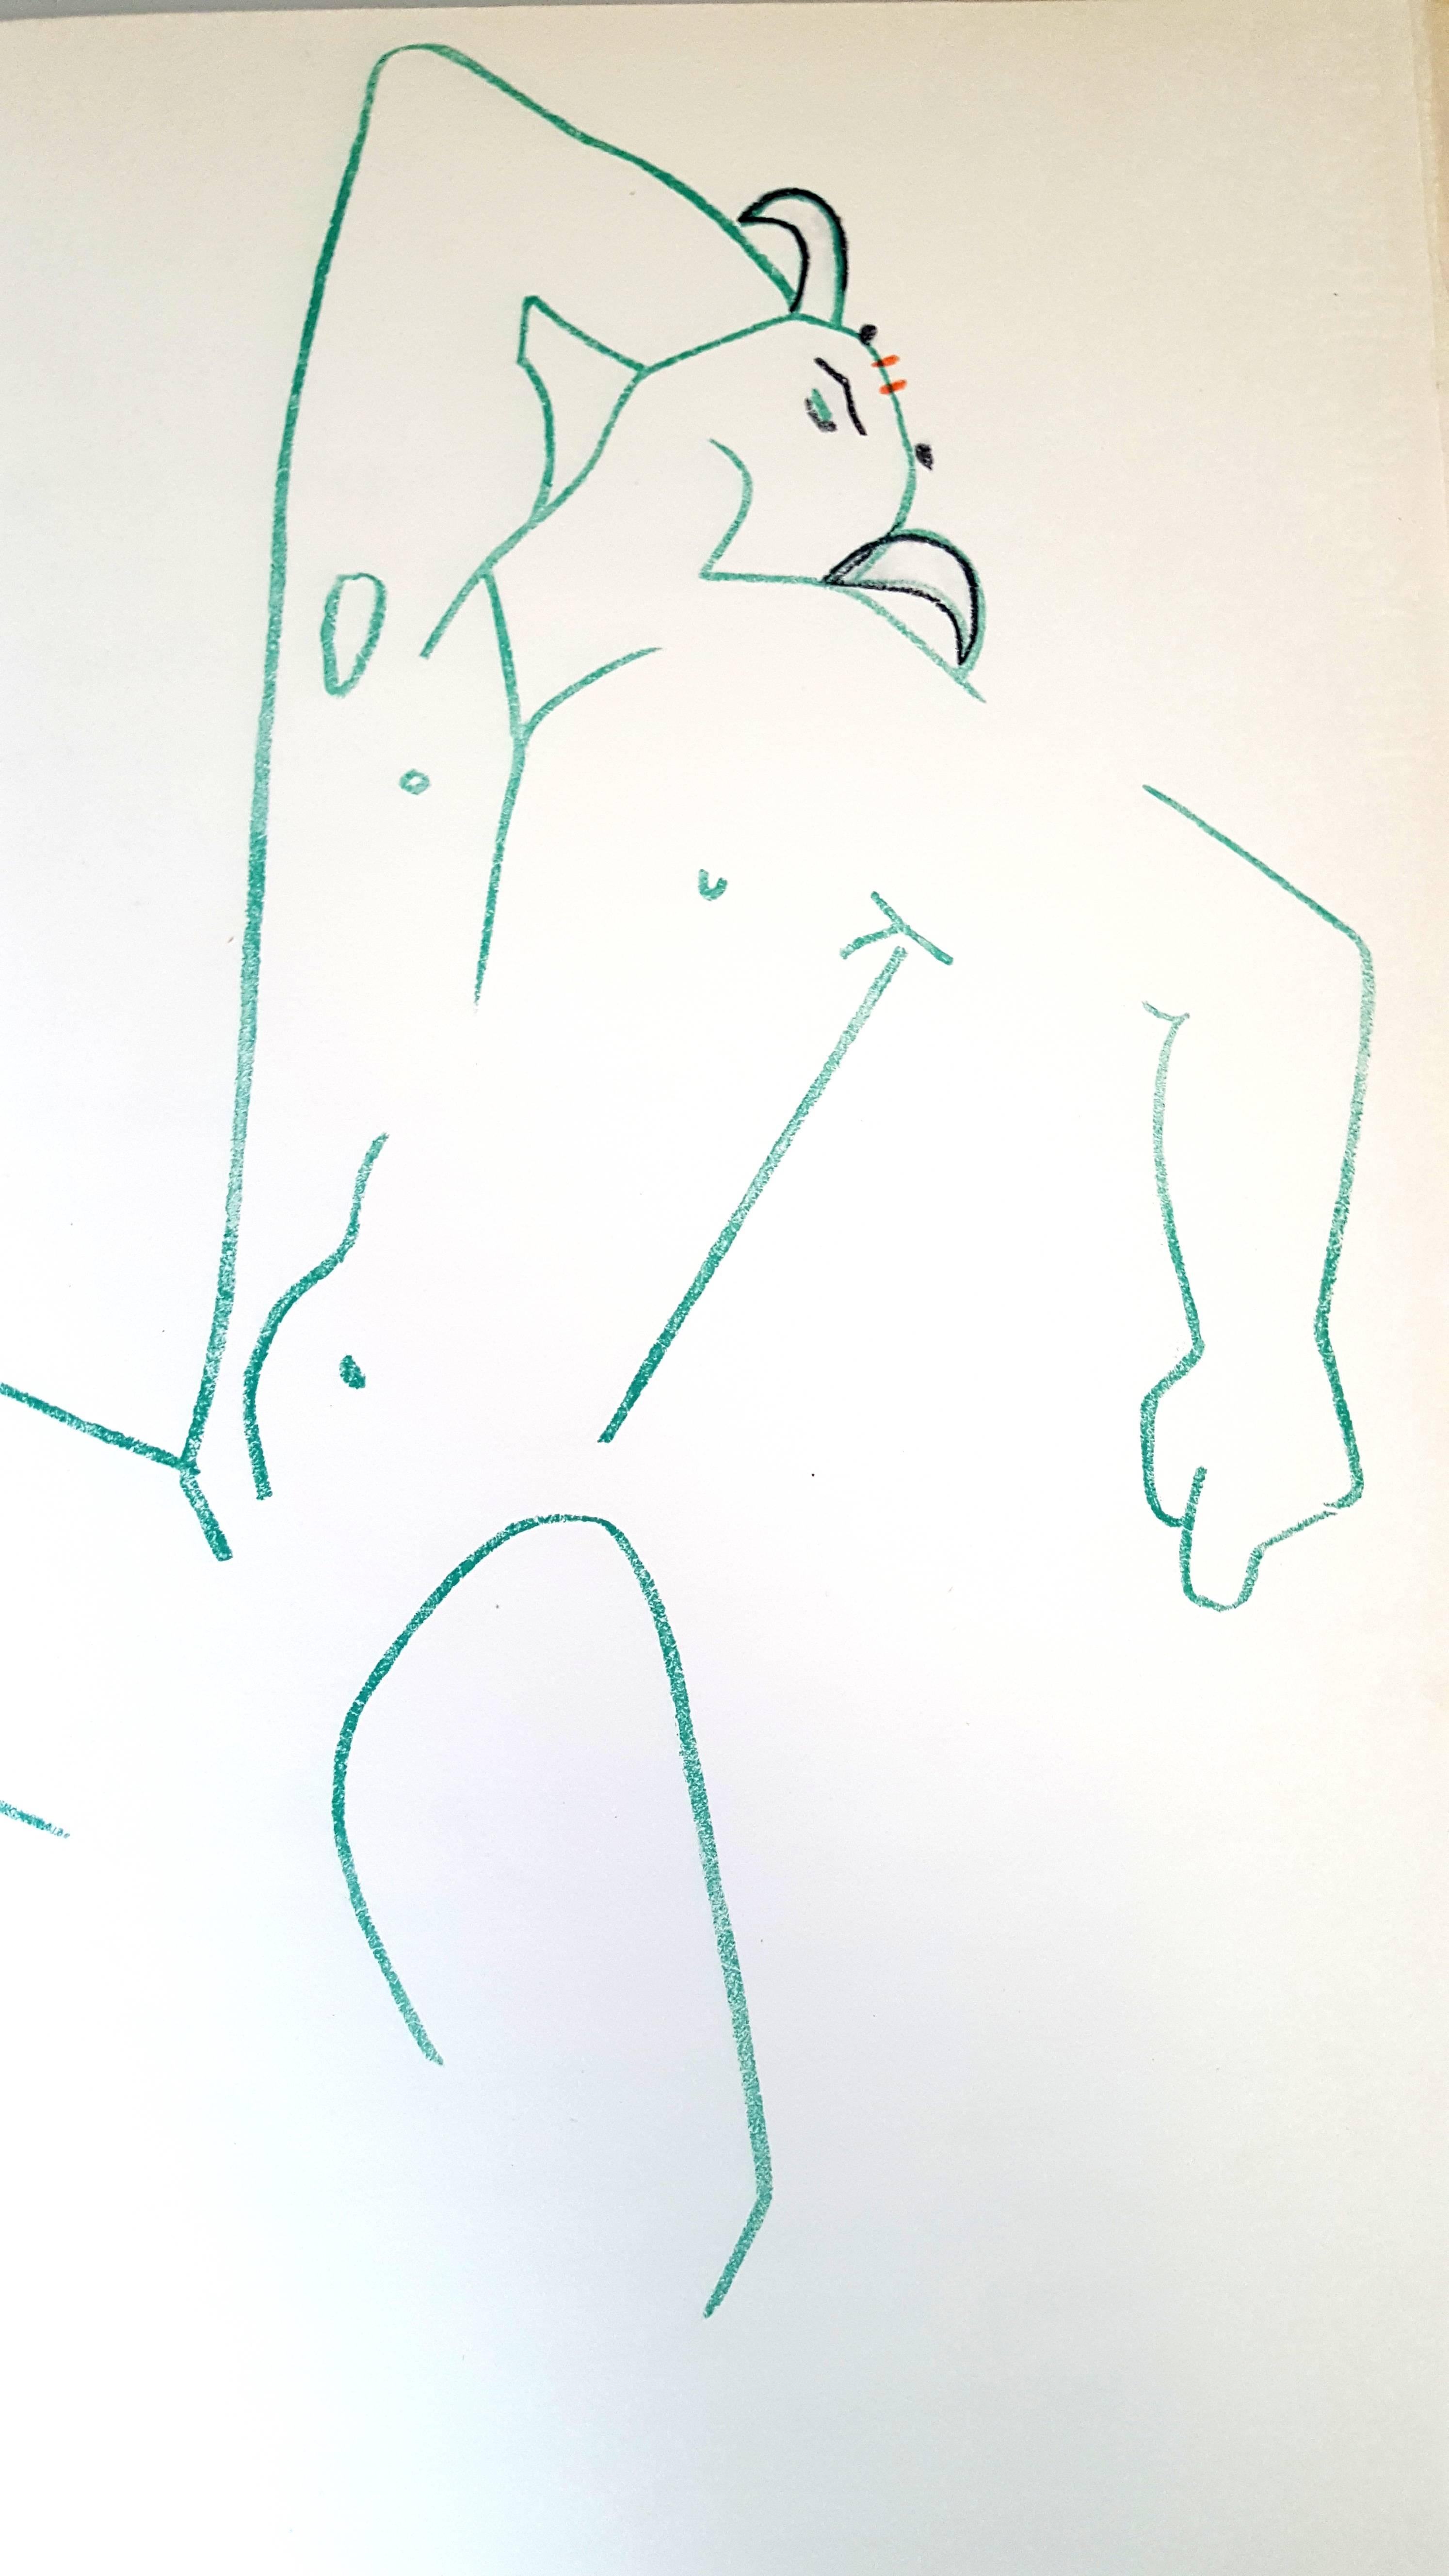 Jean Cocteau - Marine Mountains - Original Lithograph
Dimensions: 38 x 28 cm
Edition: 200
In Rives
From: COCTEAU. — VERDET (André). Montagnes marines. S. l. (Paris), Les Messagers du Livre, 1961

Jean Cocteau

Writer, artist and film director Jean